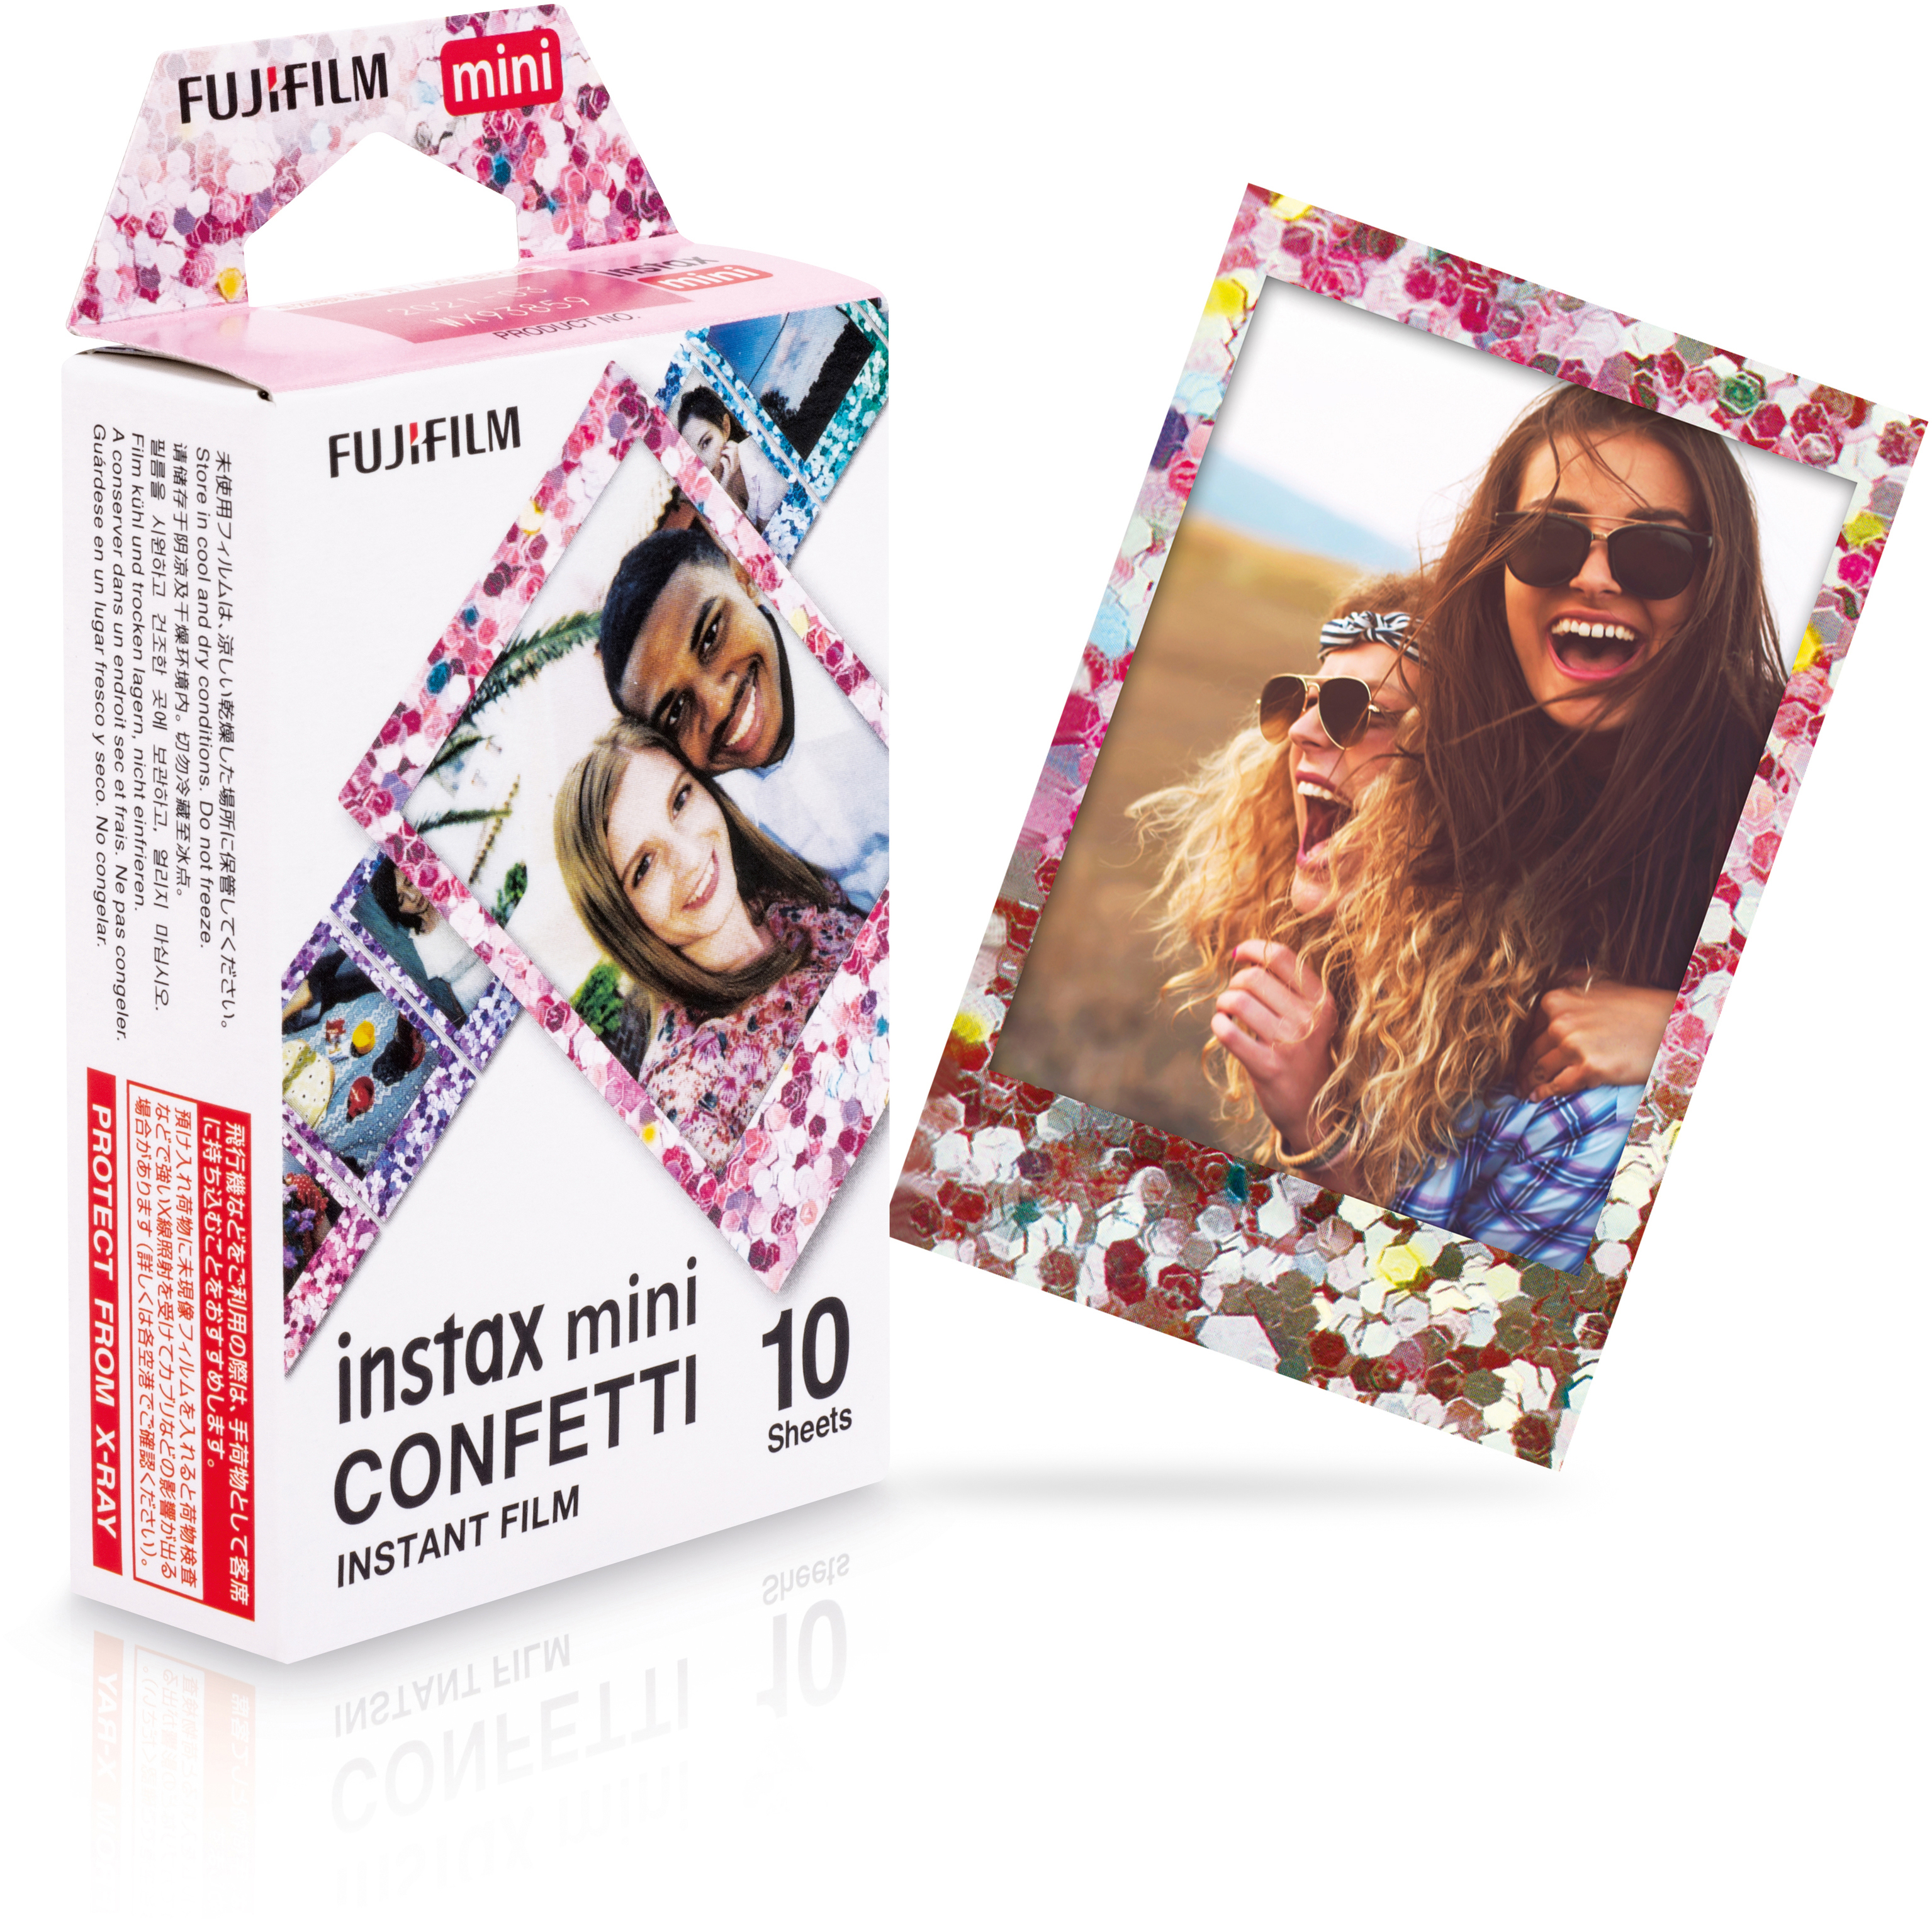 FUJIFILM instax mini Film Film Confetti